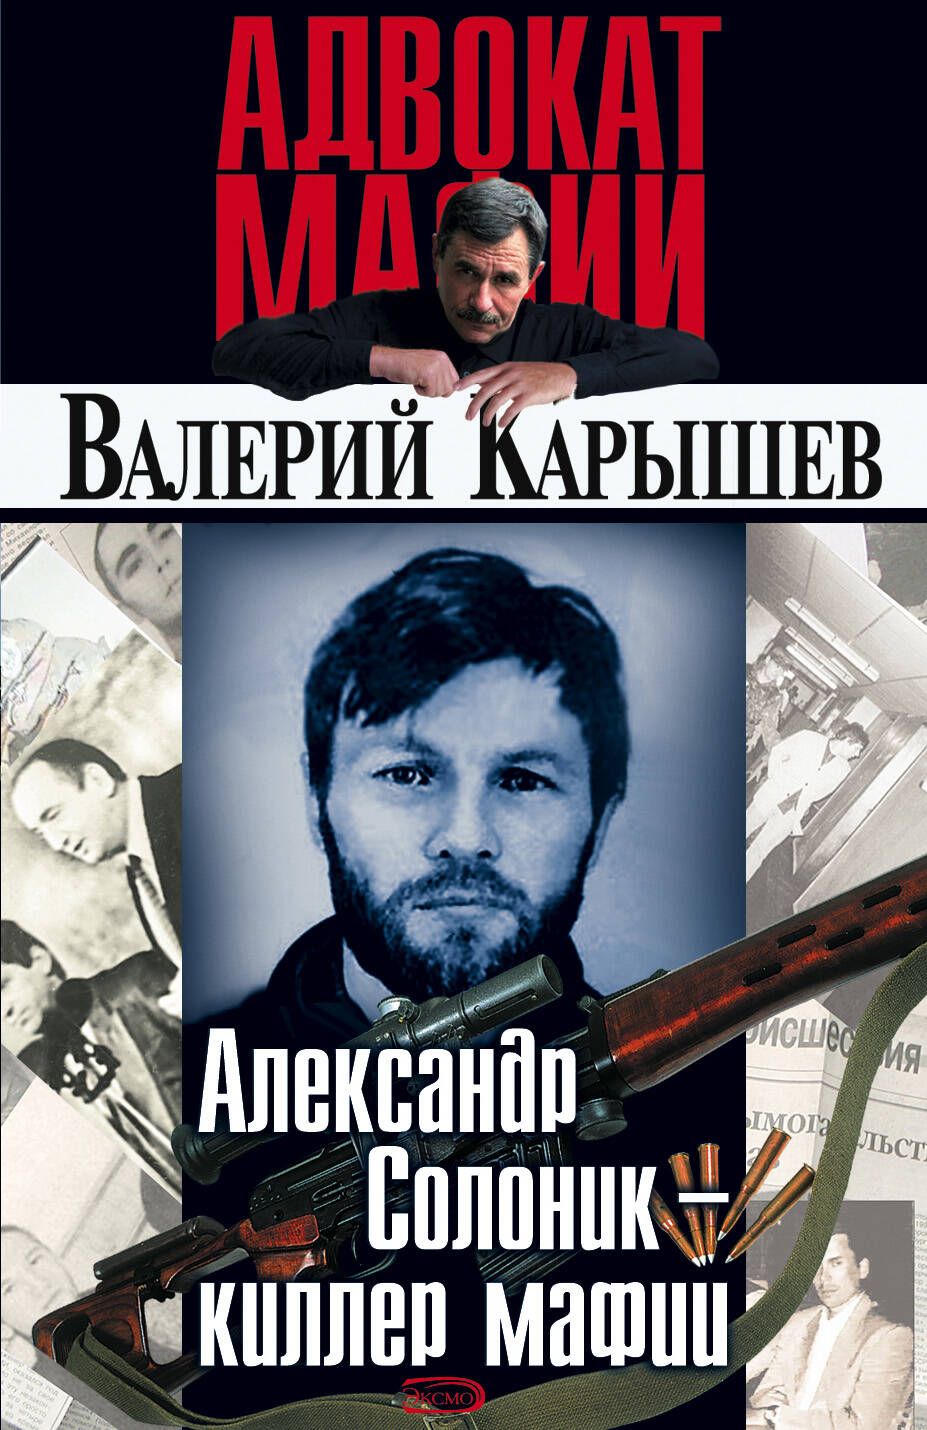 Александр Солоник - киллер мафии